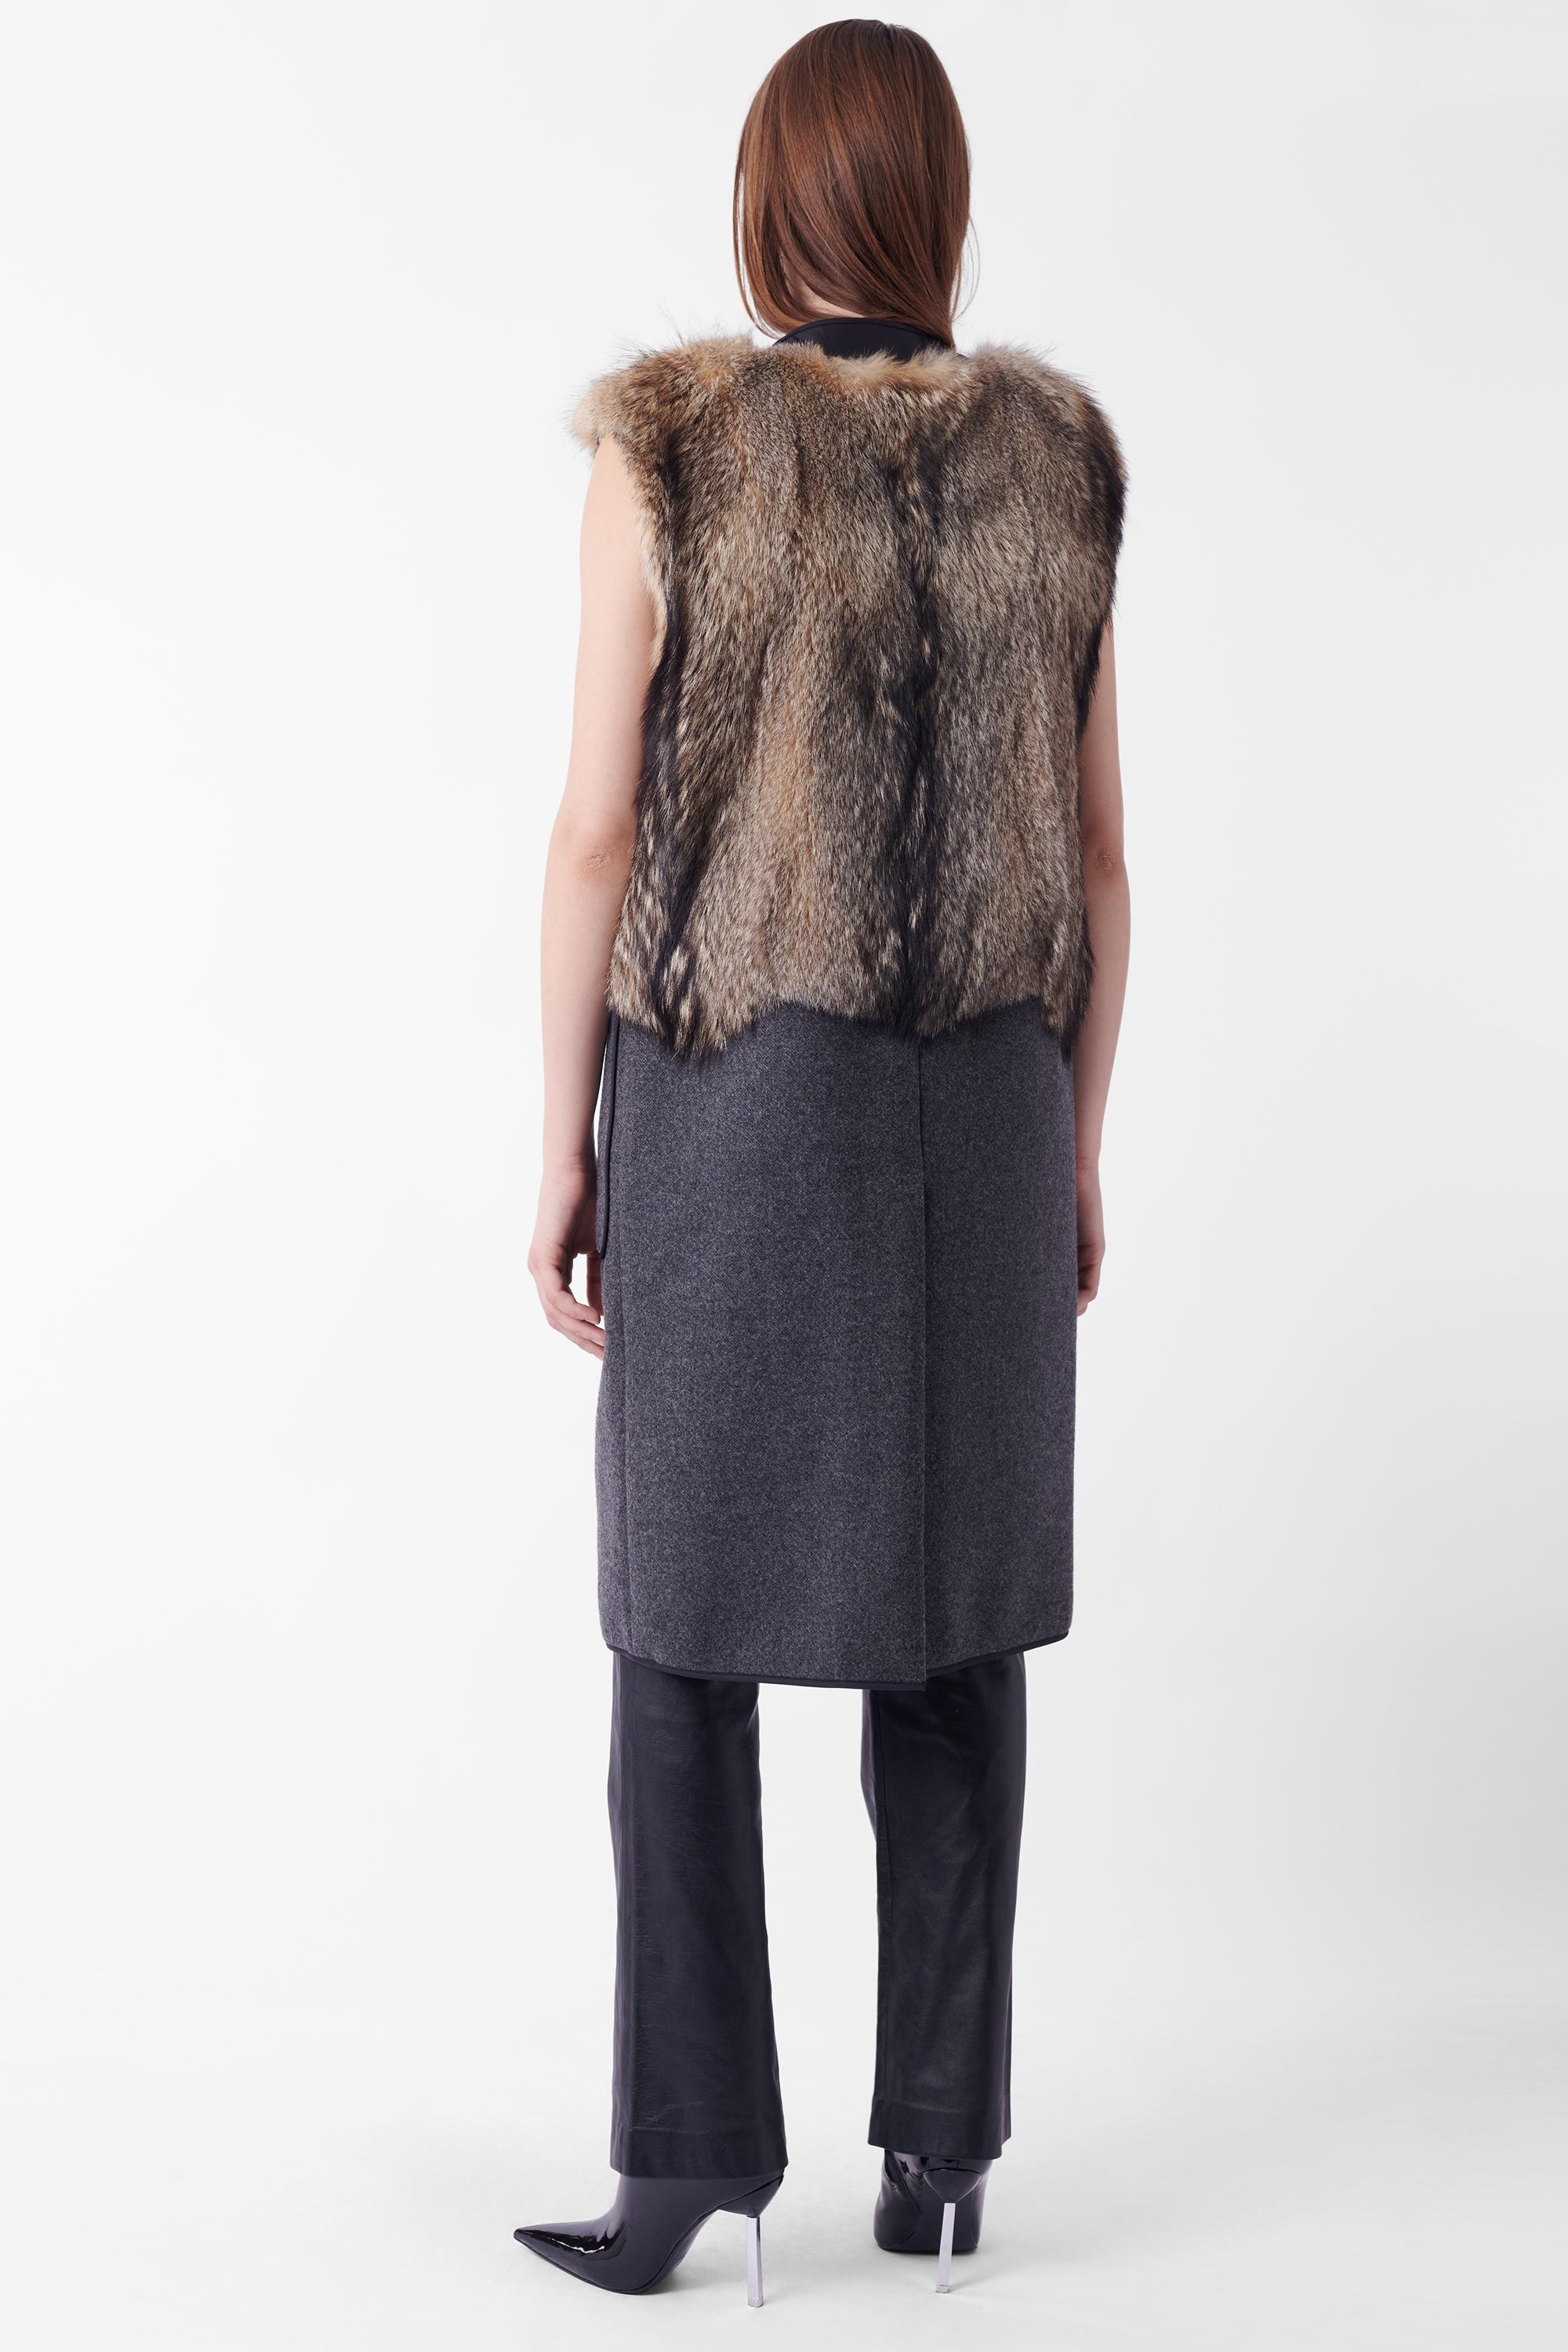 Prada F/W 2014 Runway Mens Fur Waistcoat For Sale 1